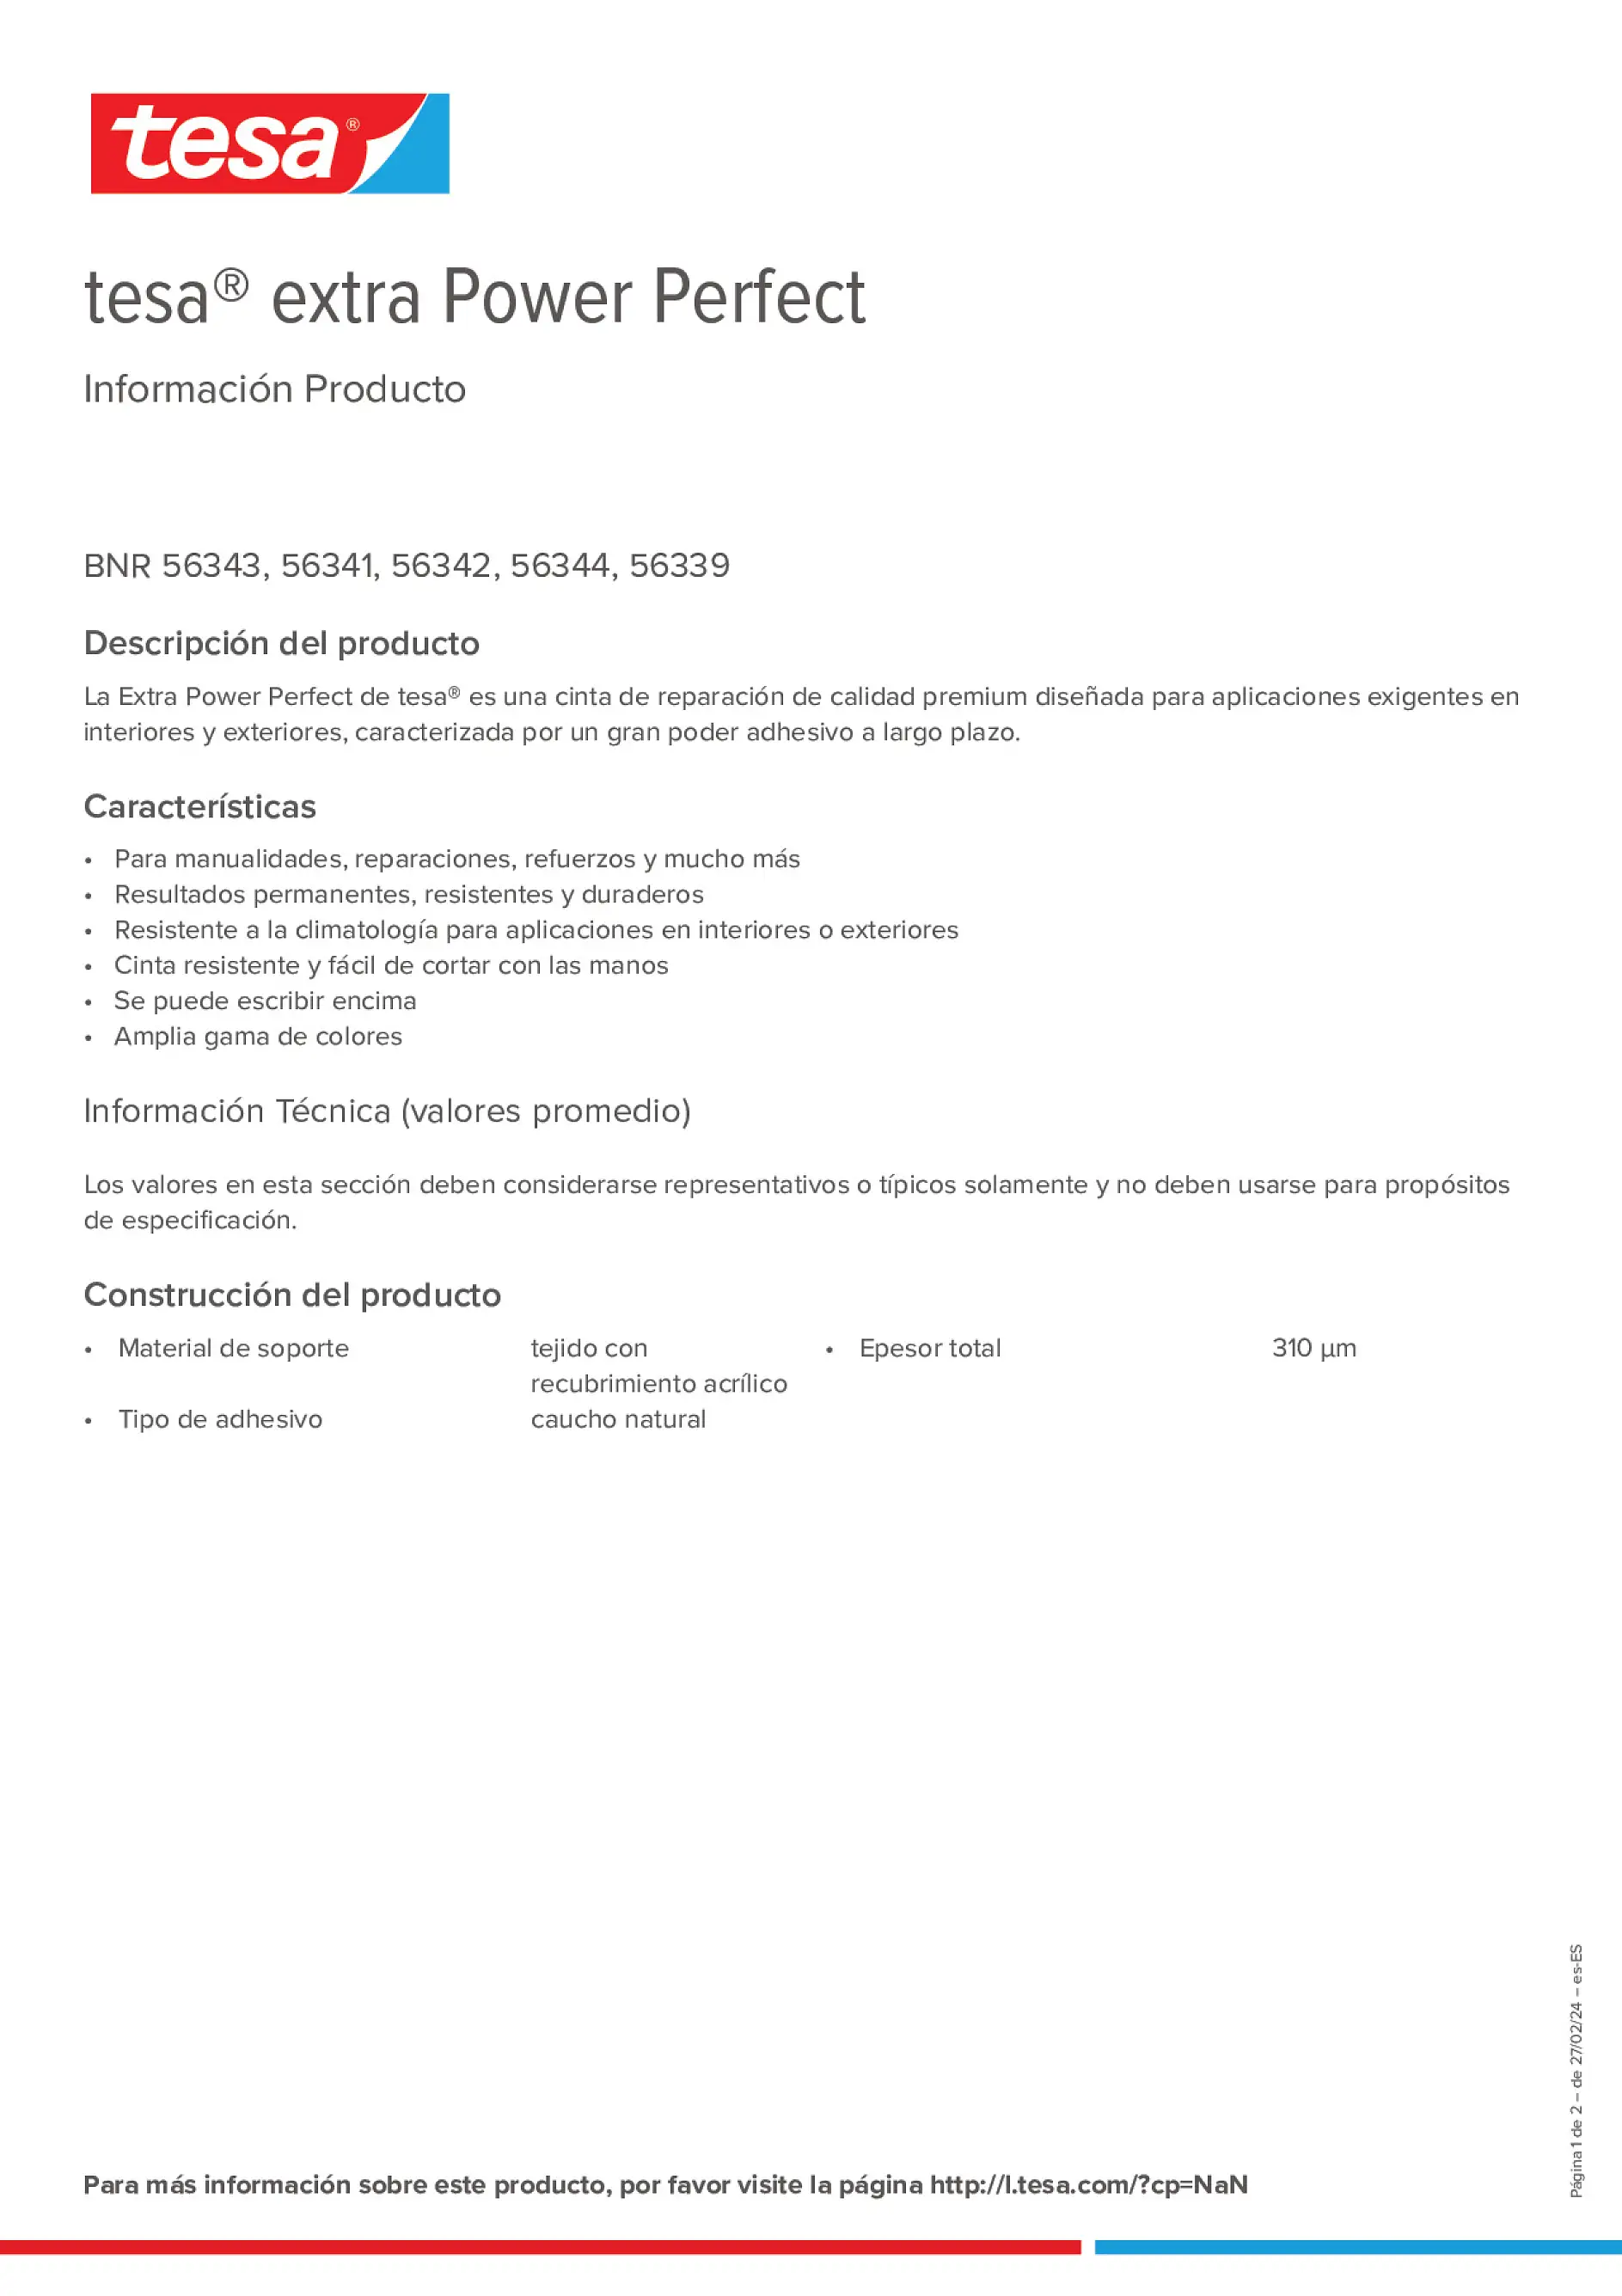 Product information_tesa® extra Power 56339_es-ES